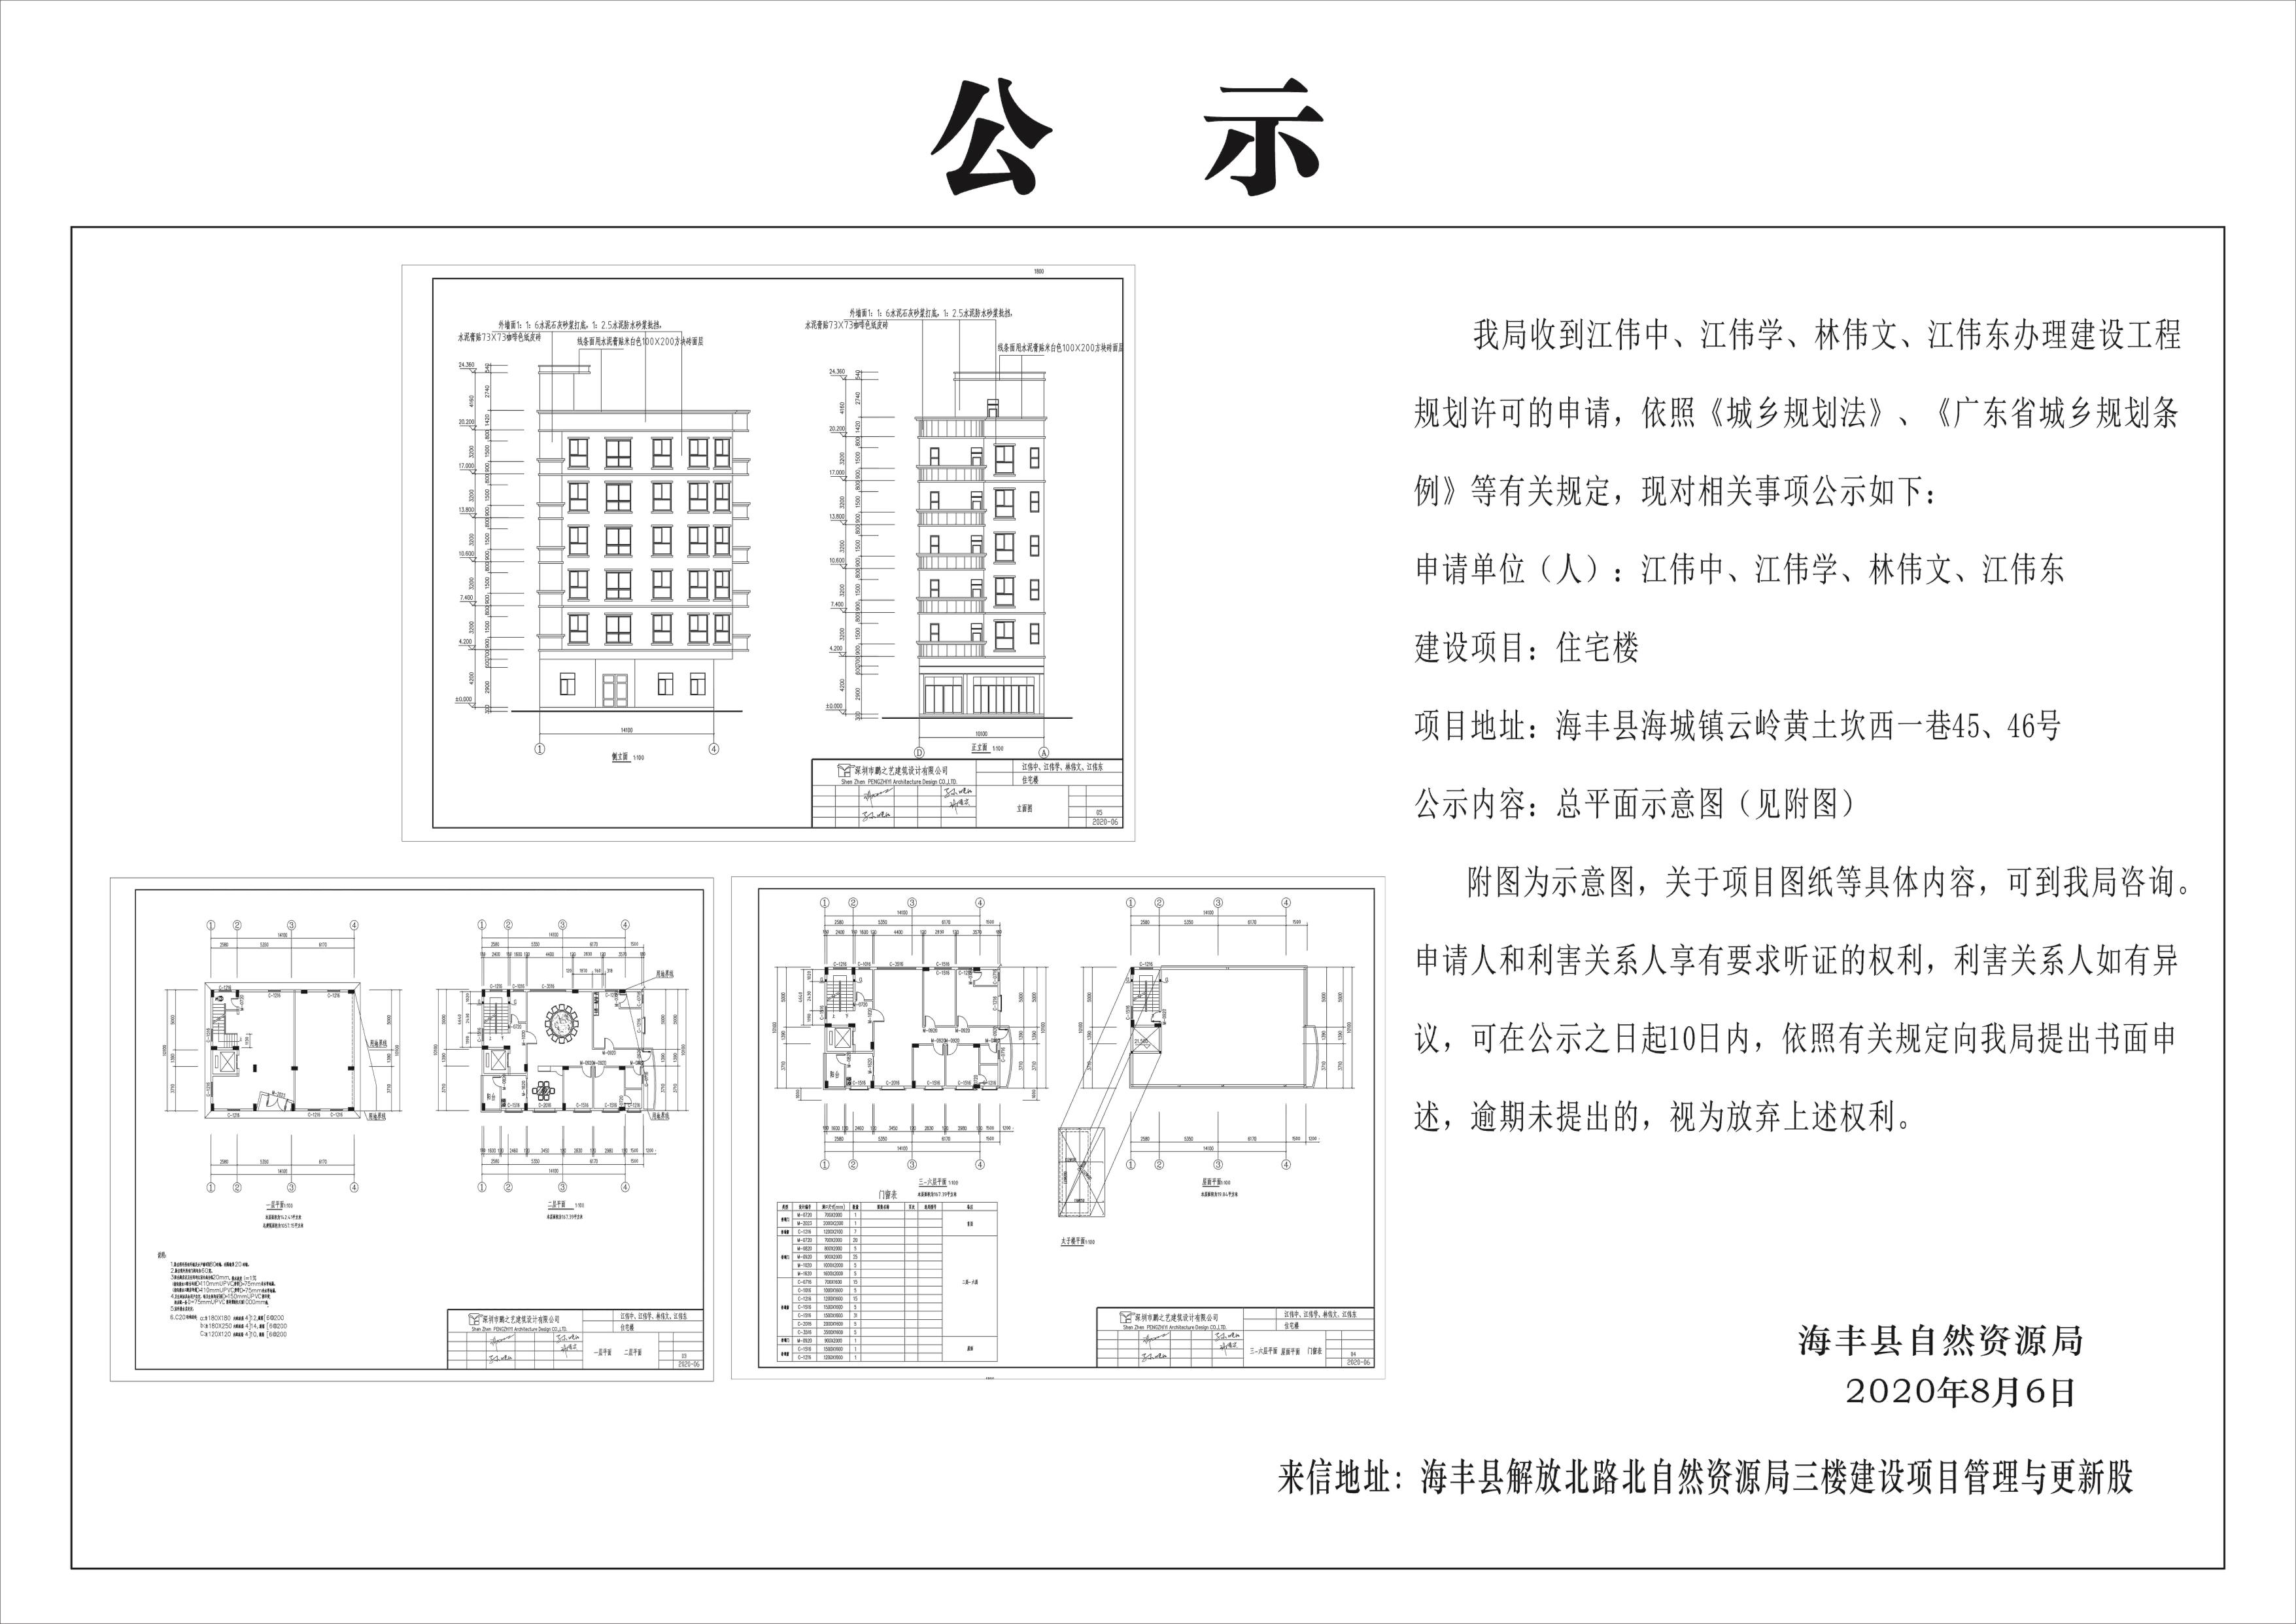 长沙市自然资源商厦项目规划总平面图修改批前公示(组图)